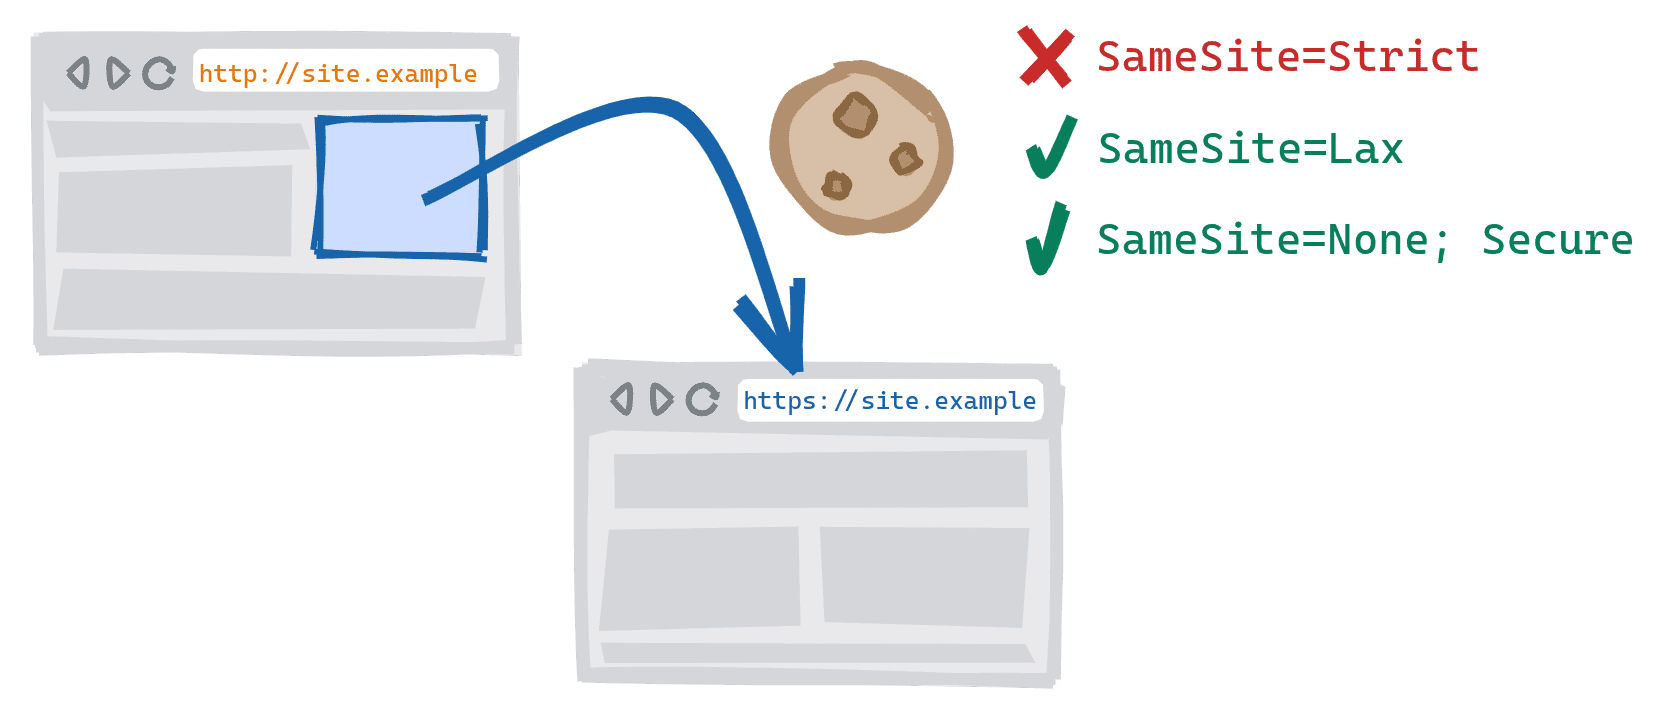 یک پیمایش بین طرحی که با دنبال کردن پیوندی در نسخه HTTP ناامن یک سایت به نسخه امن HTTPS انجام می‌شود. SameSite=کوکی های سختگیرانه مسدود شده است، SameSite=Lax و SameSite=هیچکدام; کوکی های ایمن مجاز هستند.